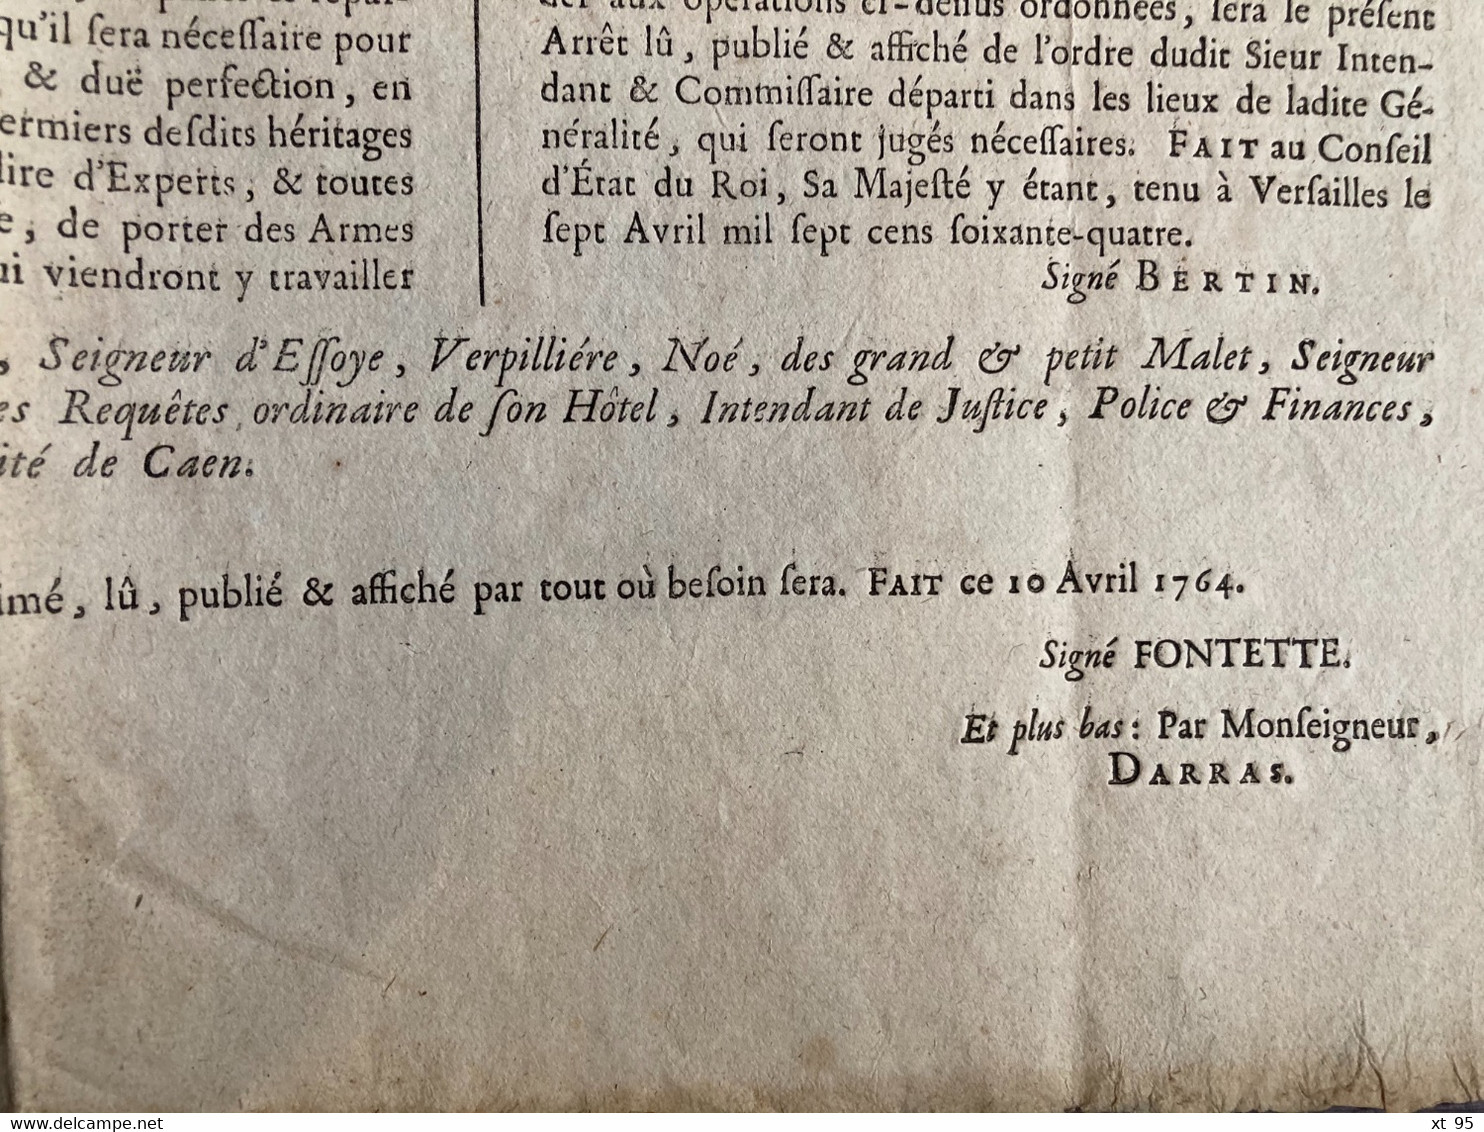 Arrest Du Conseil D Etat Du Roi - 7 Avril 1764 - Normandie - Caen Avranches Coutances - Fontette - Plakate